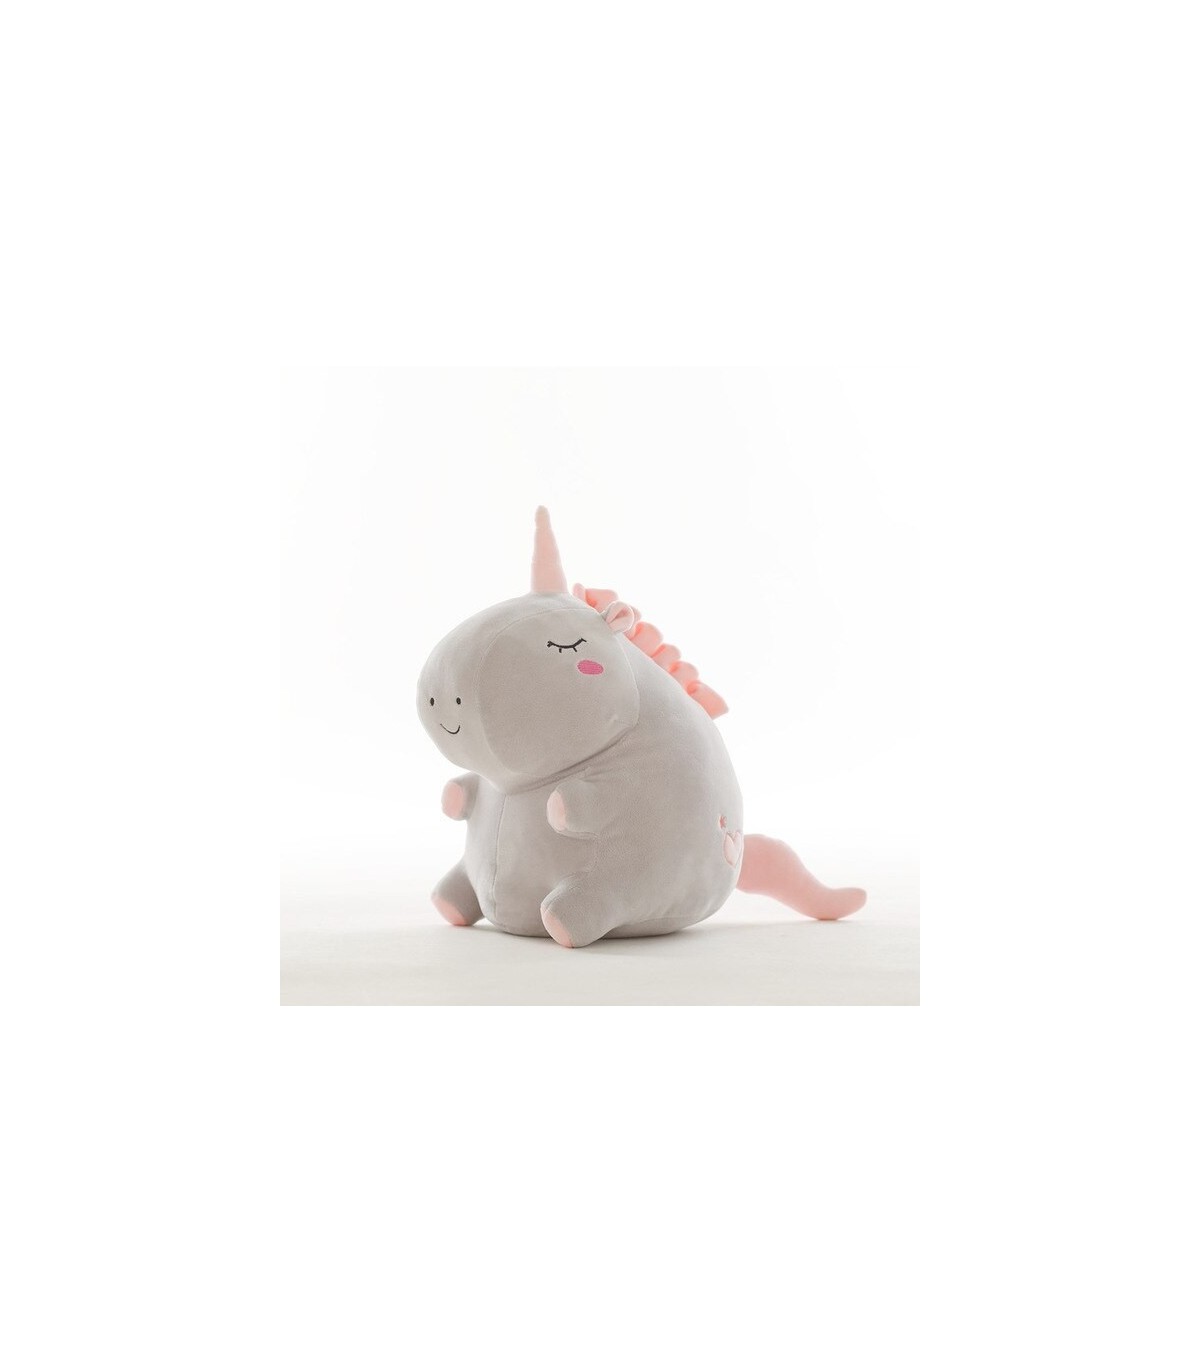 55cm unicornio lindo muñeco de juguete de peluche del bebé de peluche de juguete Animal bebé acompañar dormir regalos para los n